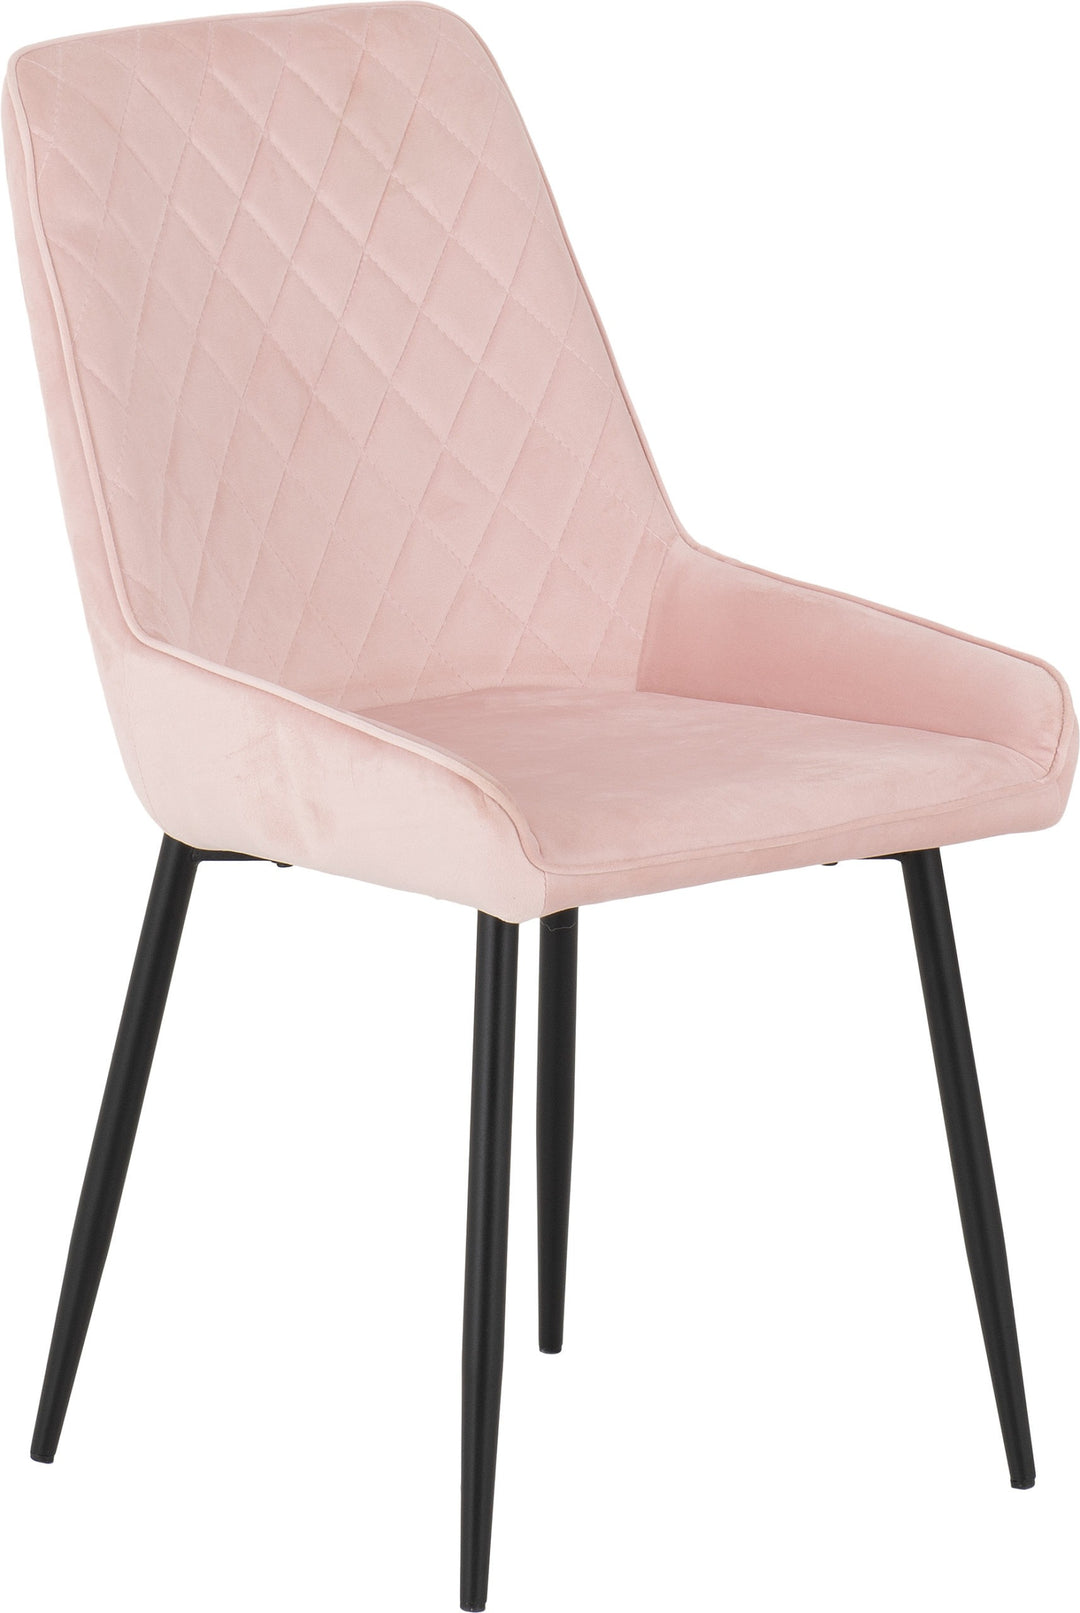 Treviso & Avery Dining Set (X4 Chairs) - Light Oak Effect/Baby Pink Velvet